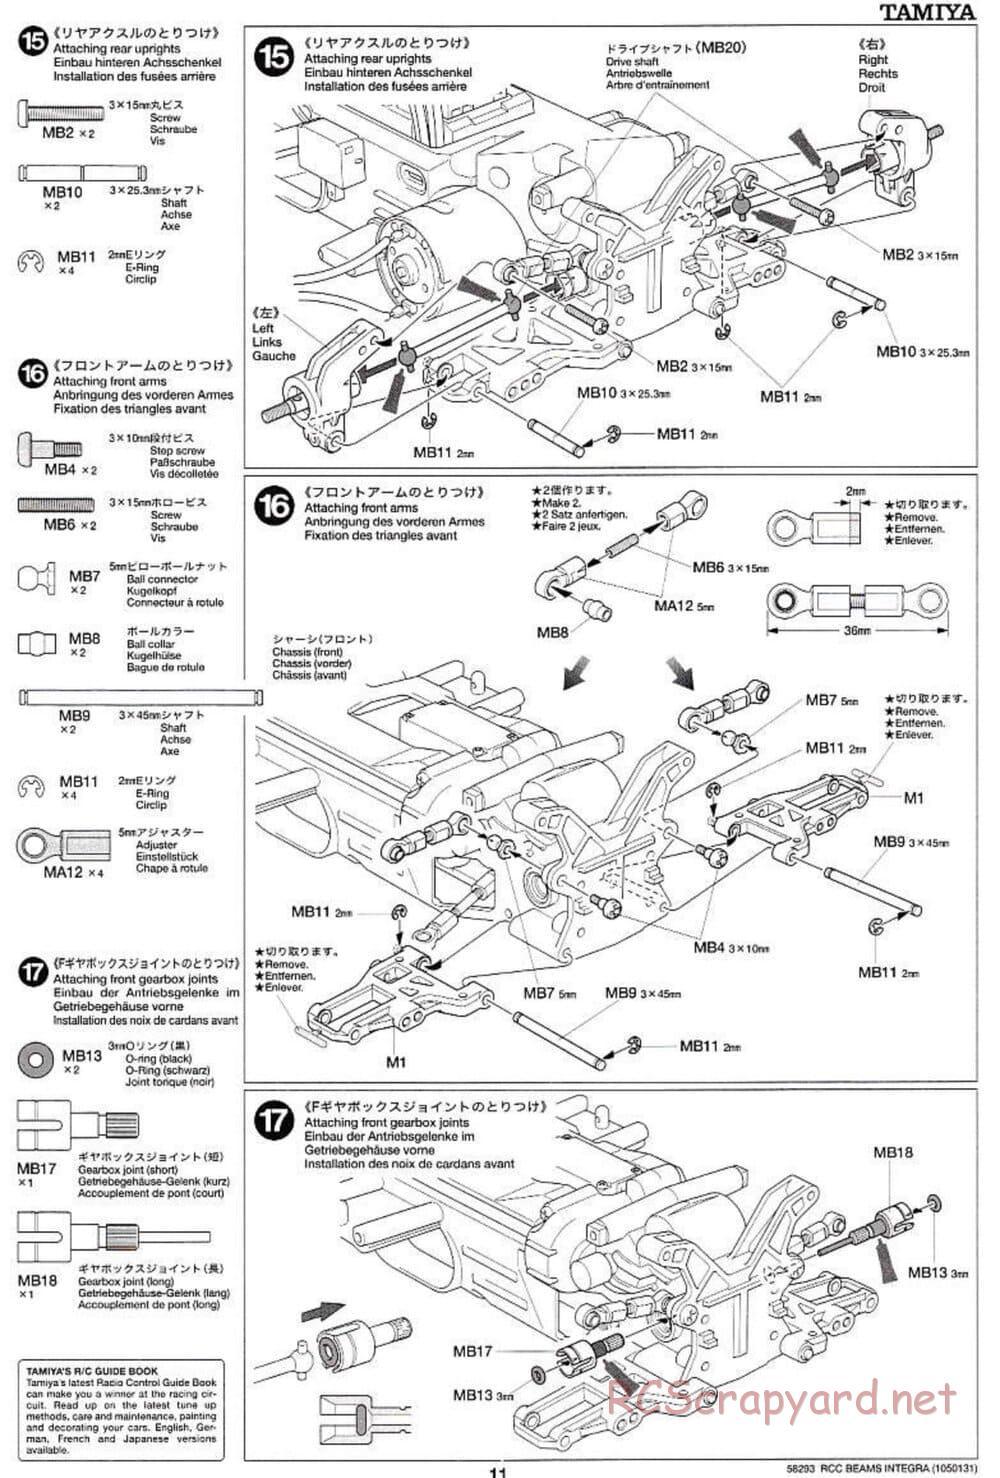 Tamiya - Beams Integra - TL-01 LA Chassis - Manual - Page 11